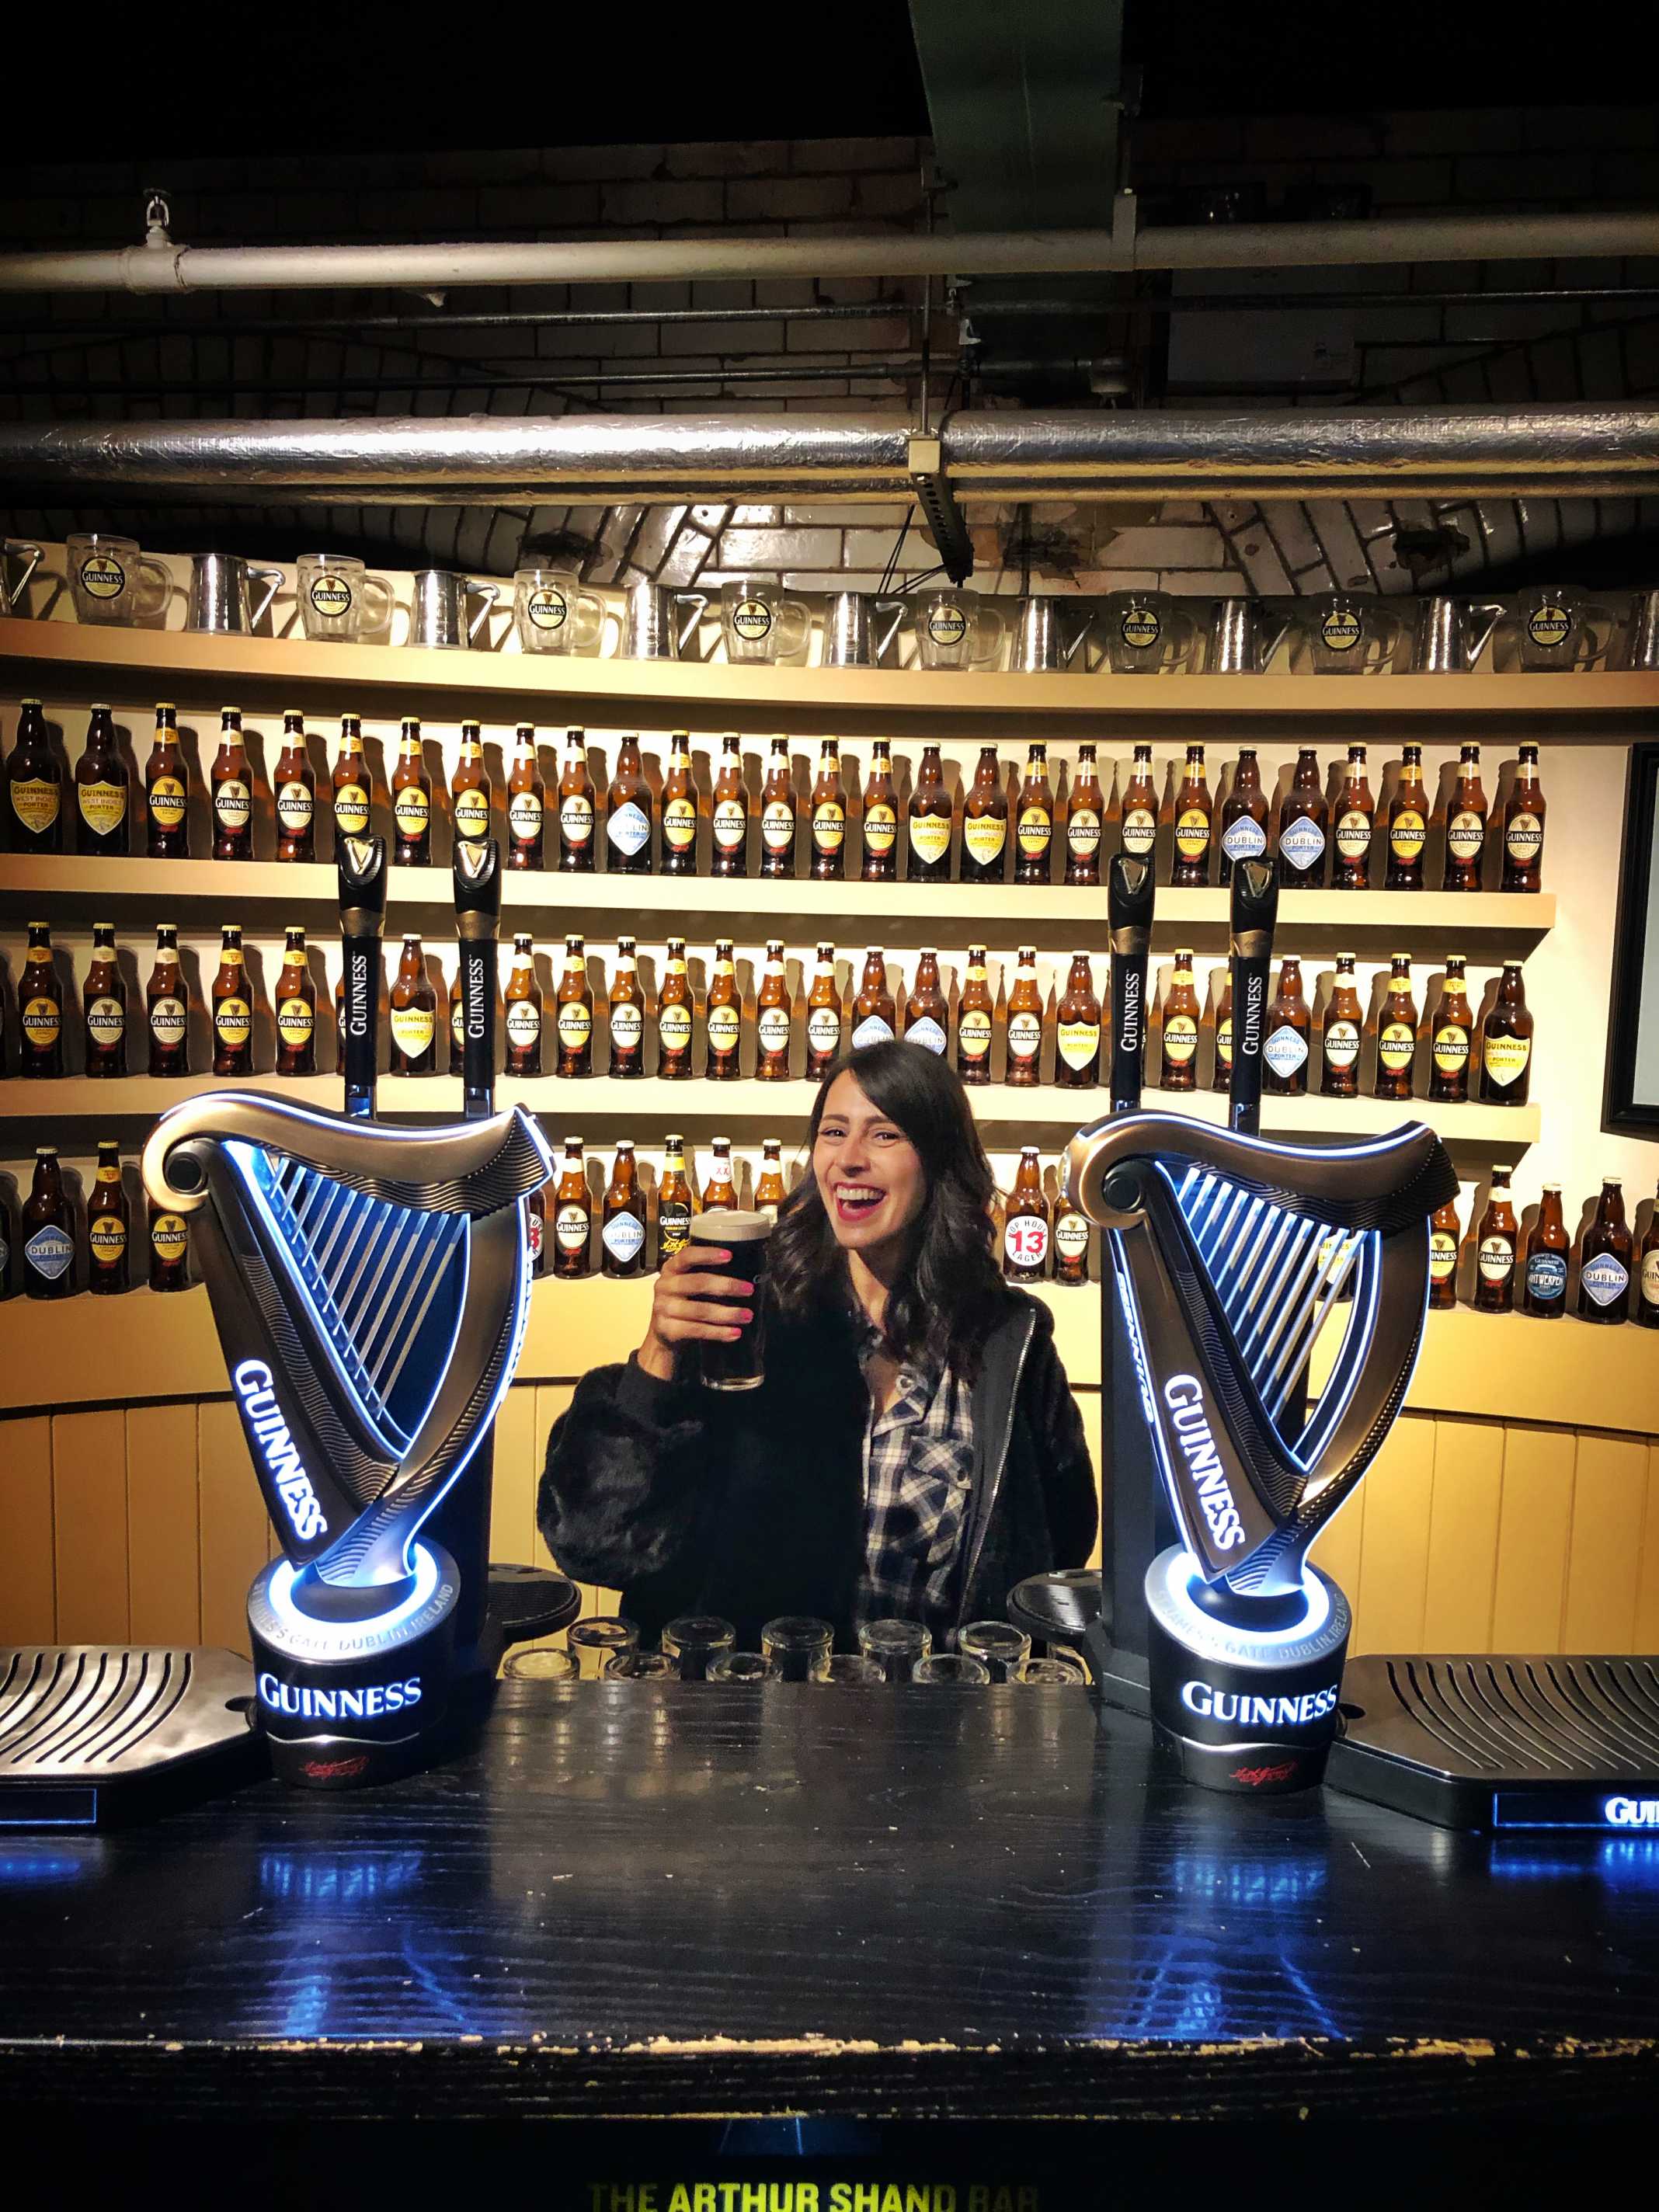 Guinness Storehouse Ireland